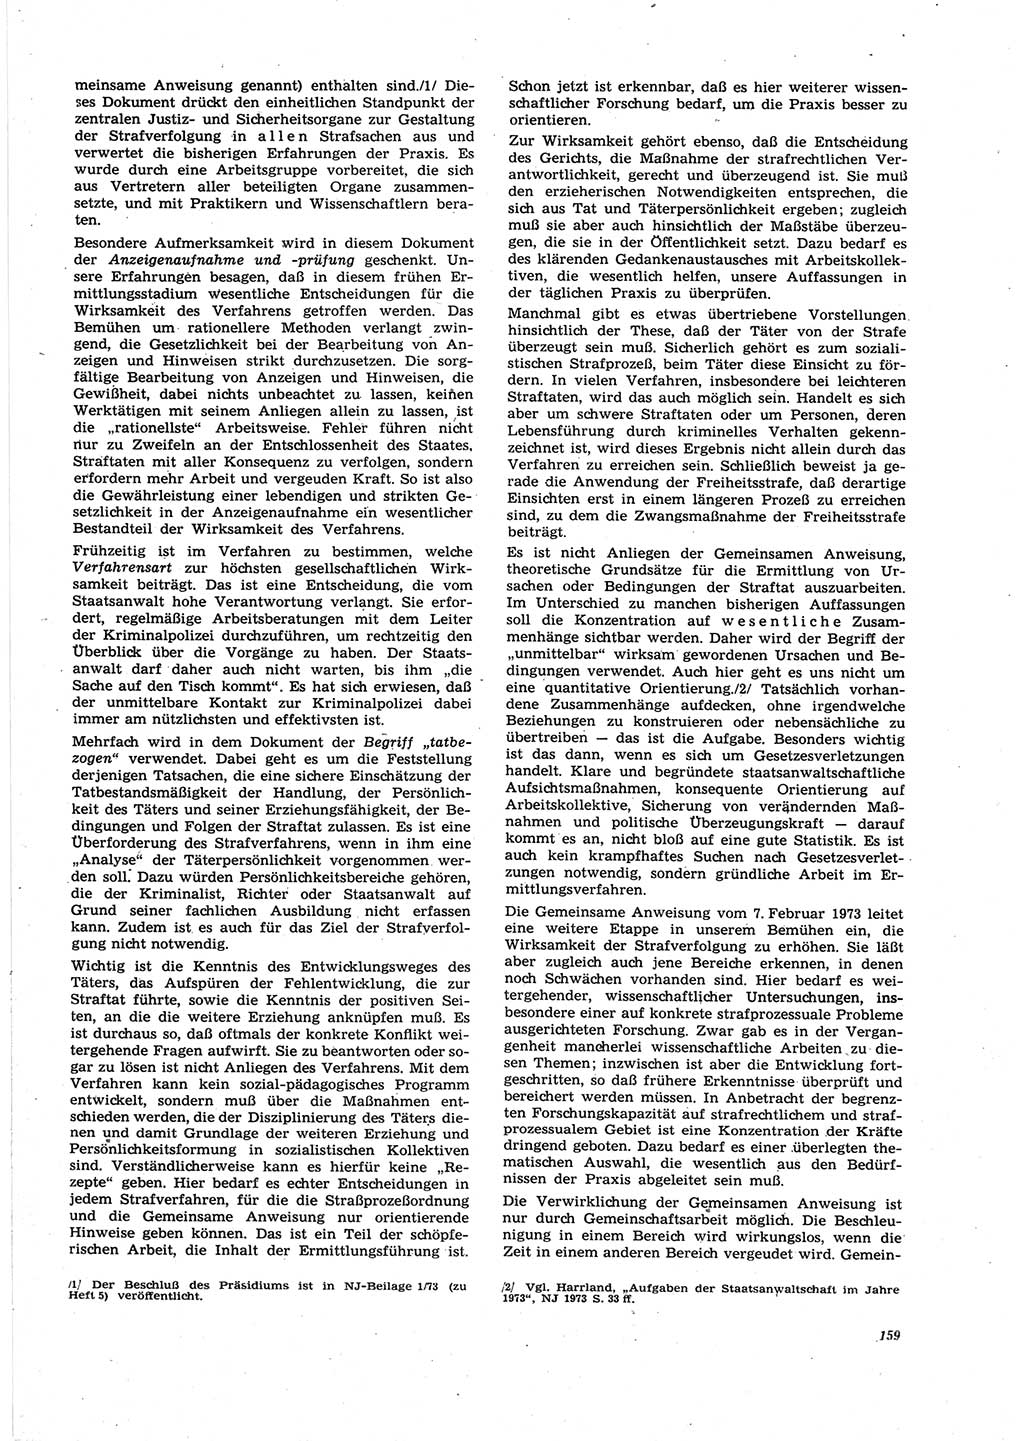 Neue Justiz (NJ), Zeitschrift für Recht und Rechtswissenschaft [Deutsche Demokratische Republik (DDR)], 27. Jahrgang 1973, Seite 159 (NJ DDR 1973, S. 159)